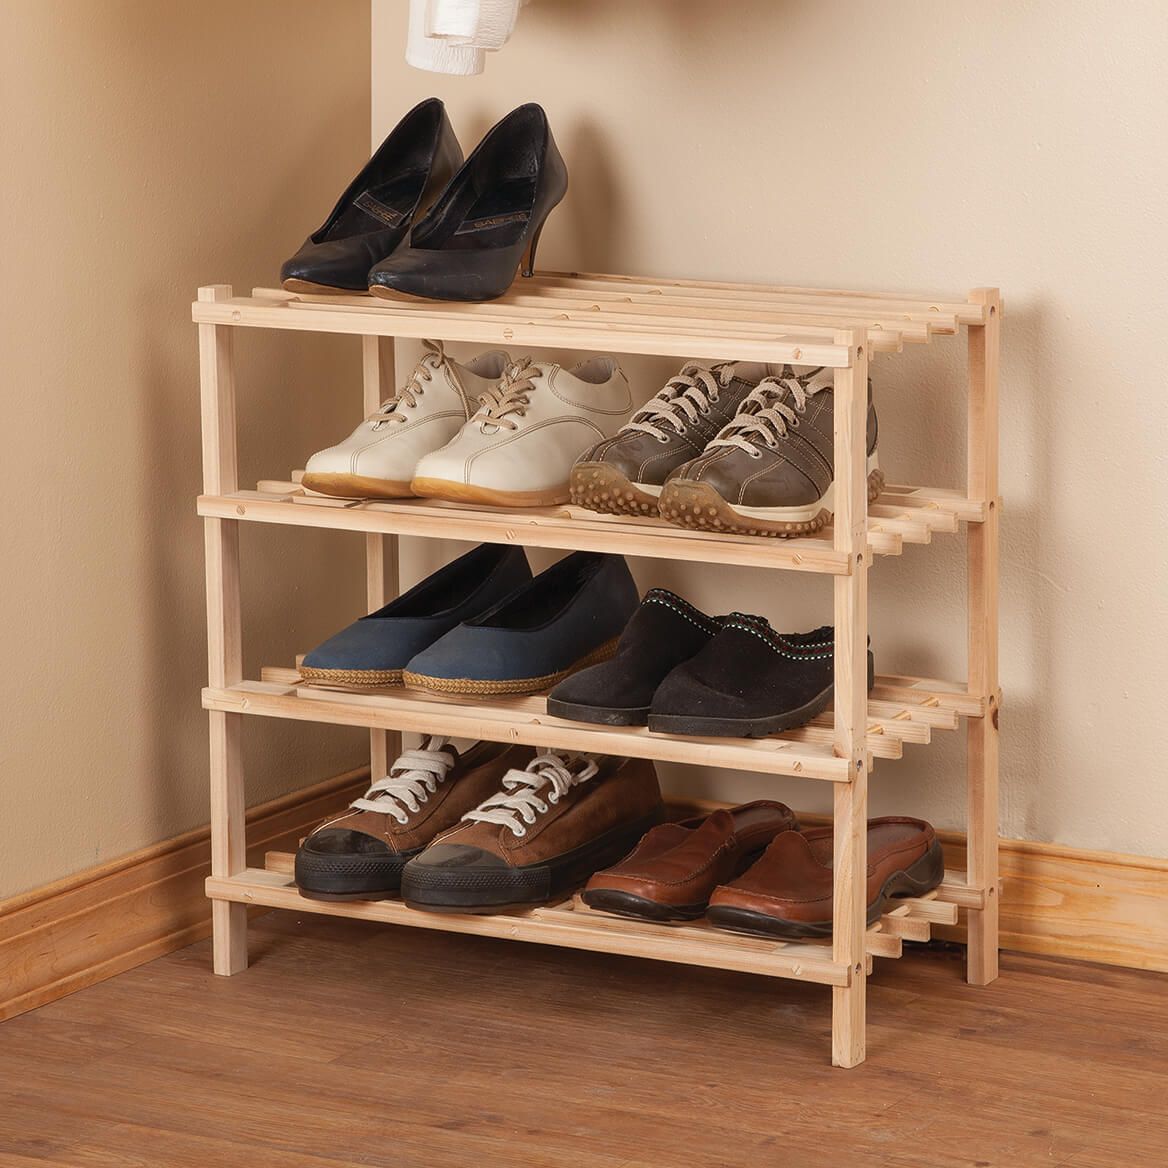 Wooden Shoe Rack by LivingSURE™ + '-' + 366046